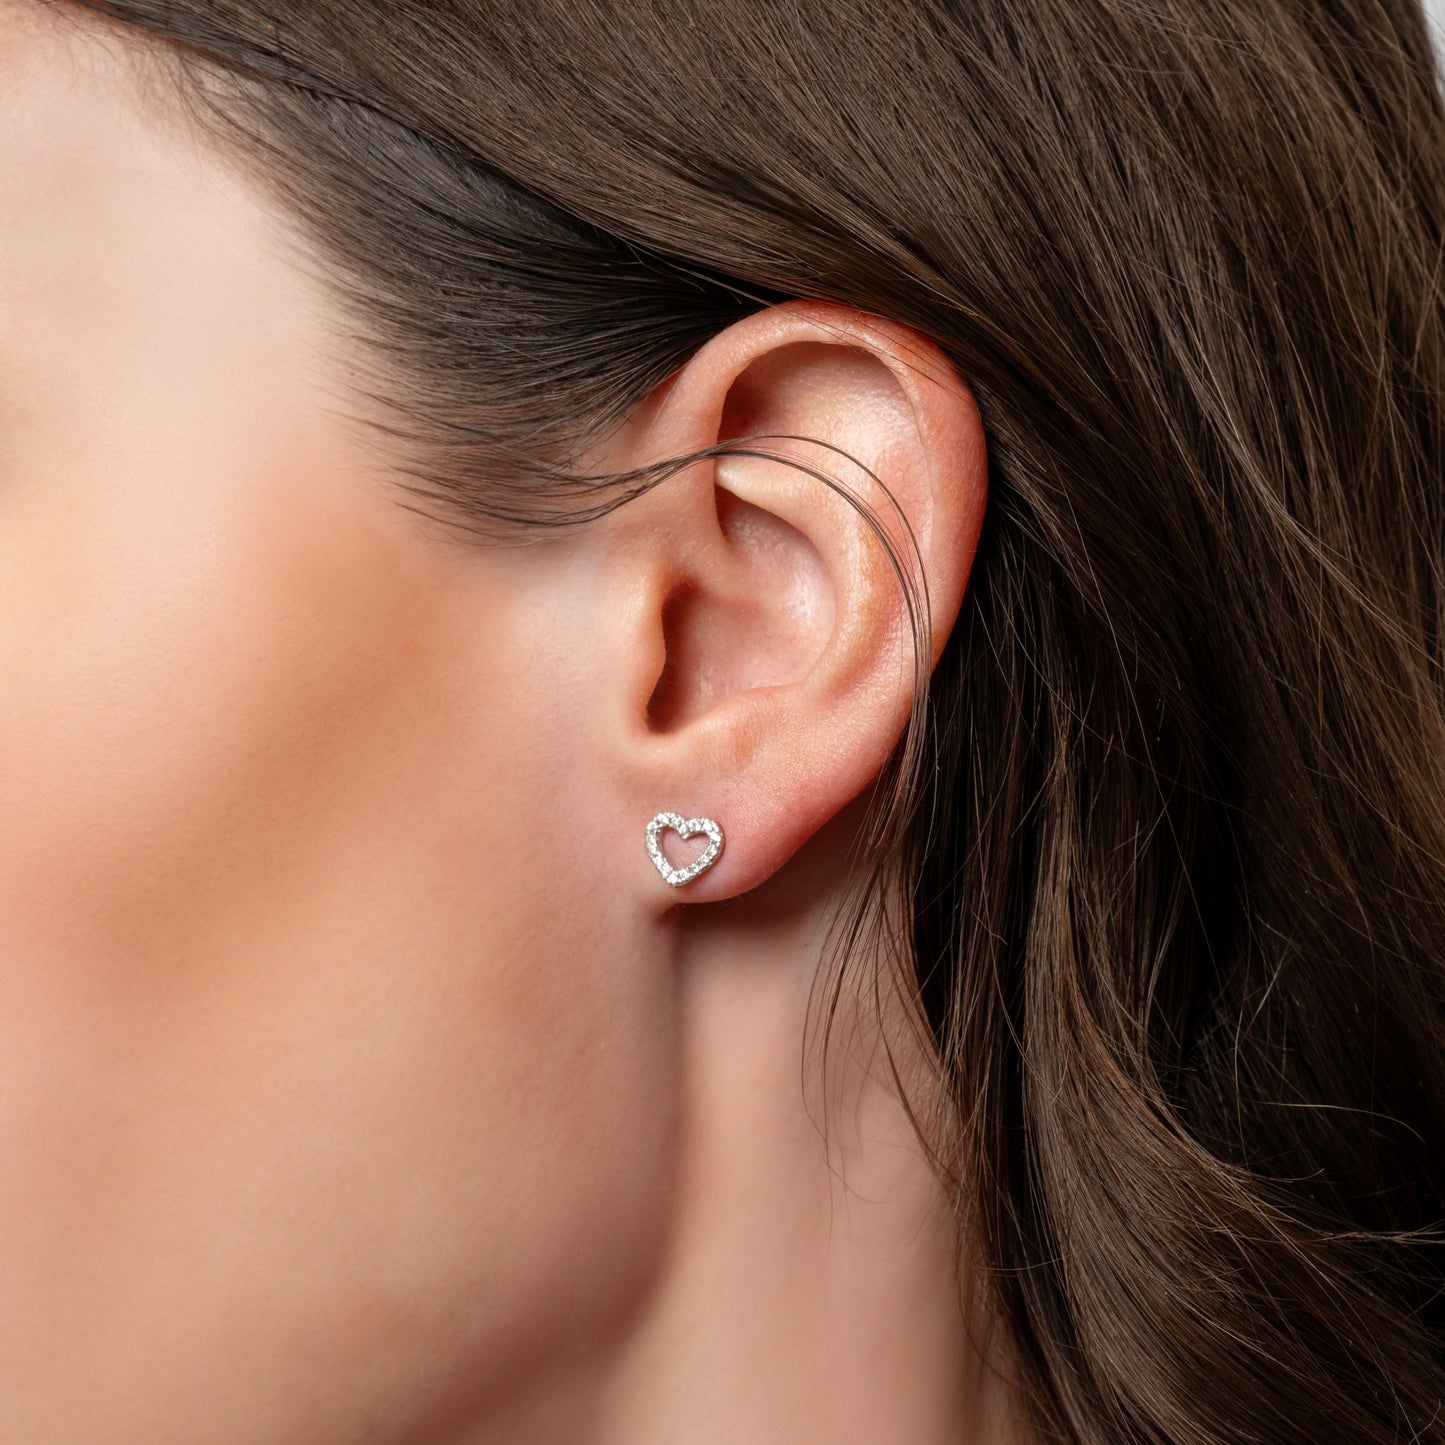 A model showing Love Heart earring in her ear